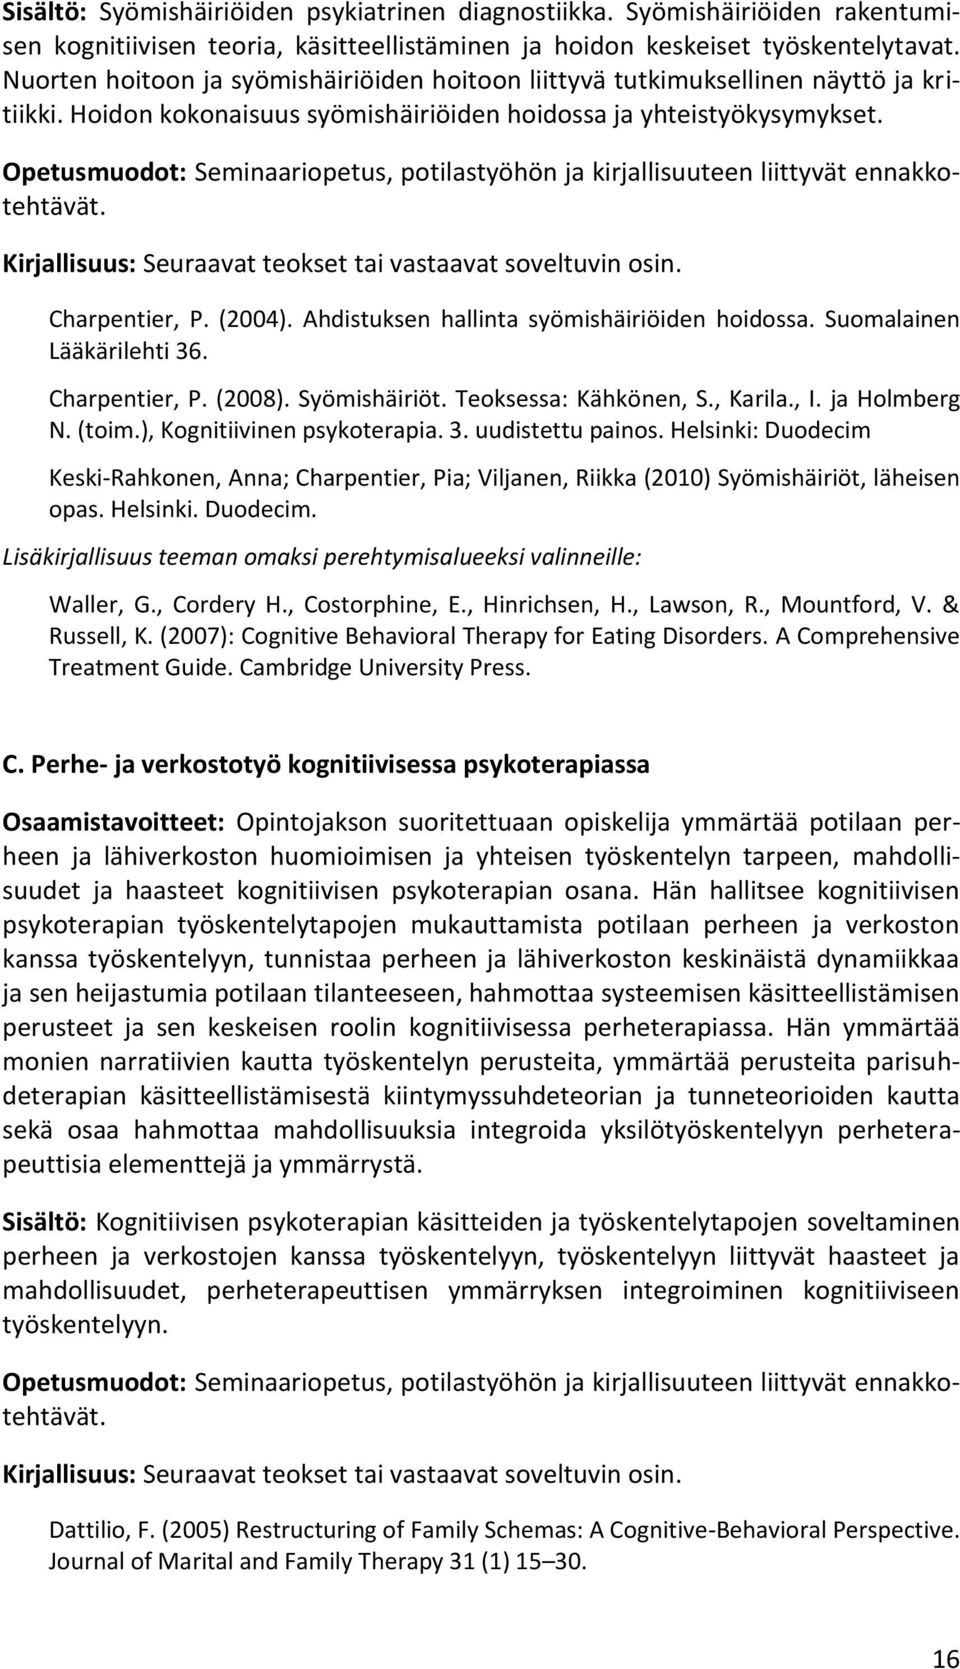 Opetusmuodot: Seminaariopetus, potilastyöhön ja kirjallisuuteen liittyvät ennakkotehtävät. Kirjallisuus: Seuraavat teokset tai vastaavat soveltuvin osin. Charpentier, P. (2004).